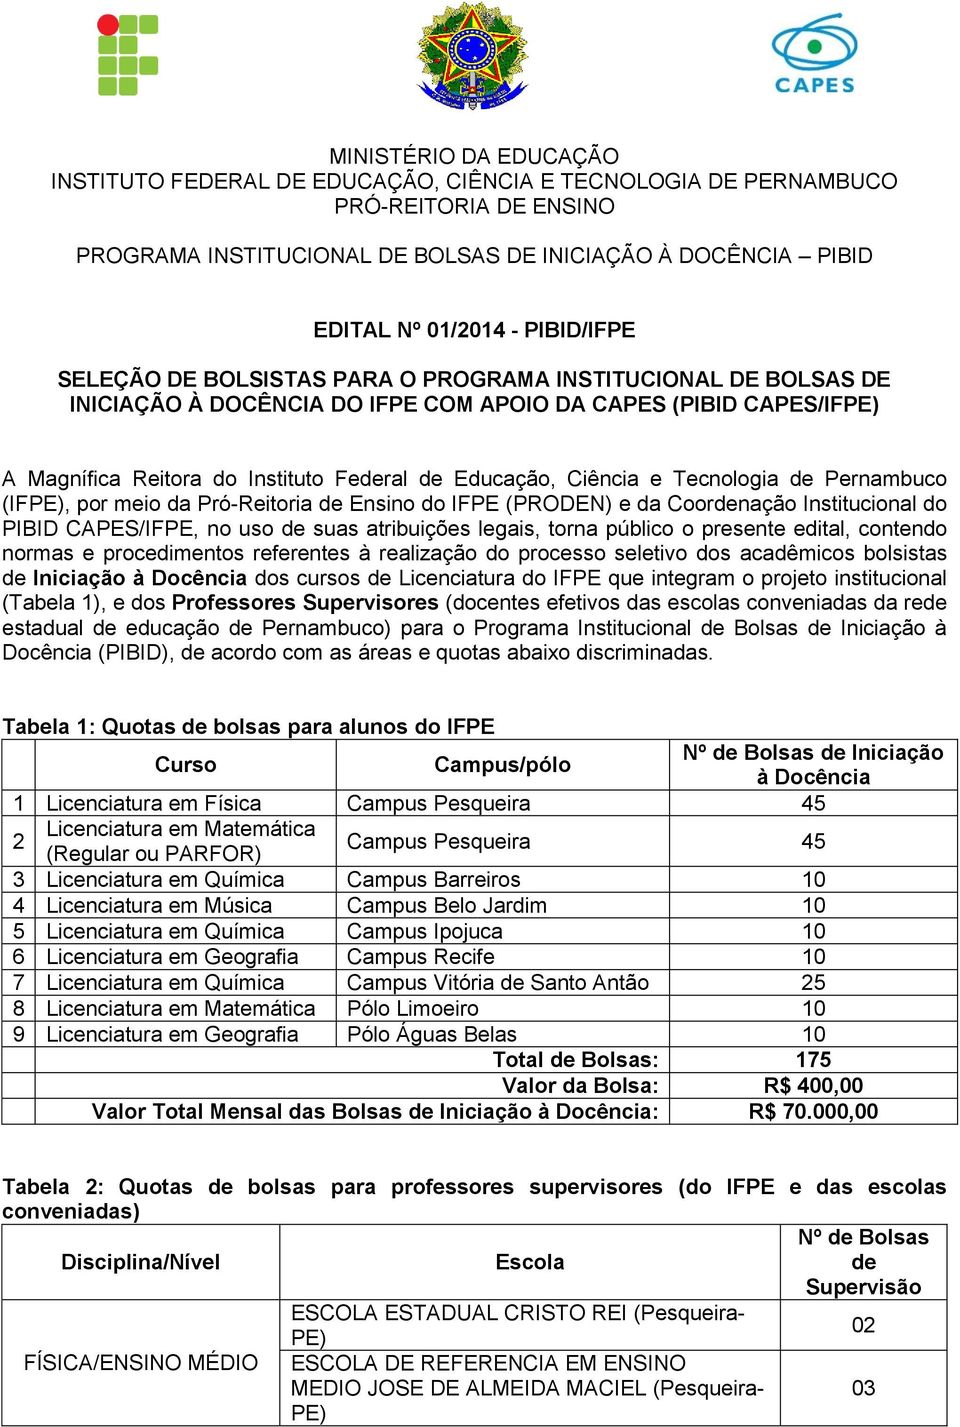 Ciência e Tecnologia de Pernambuco (IF, por meio da Pró-Reitoria de Ensino do IFPE (PRODEN) e da Coordenação Institucional do PIBID CAPES/IFPE, no uso de suas atribuições legais, torna público o